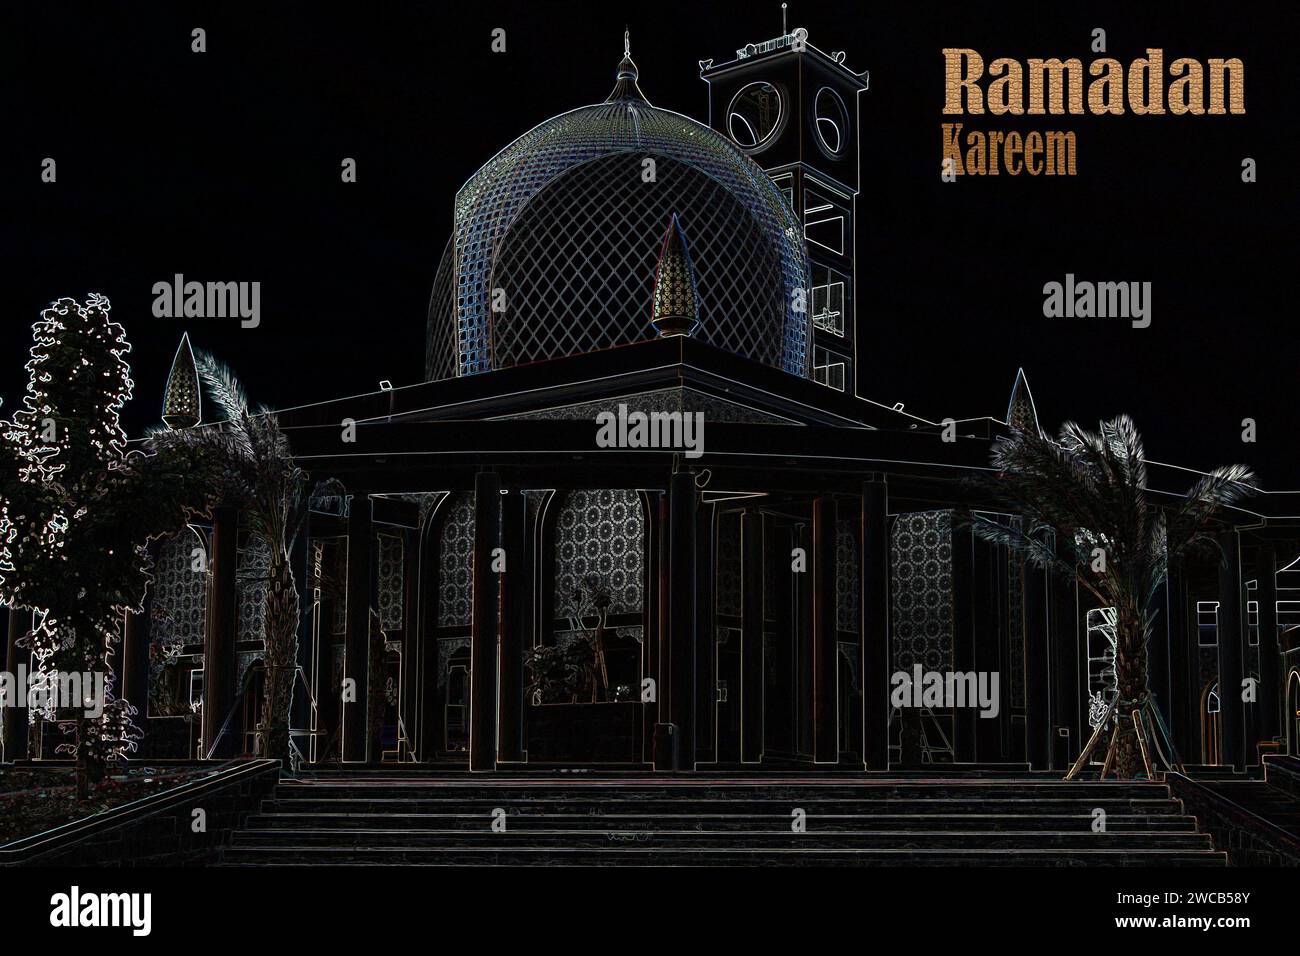 Mois Saint Ramadan Kareem fond sur le filtre d'esquisse Banque D'Images